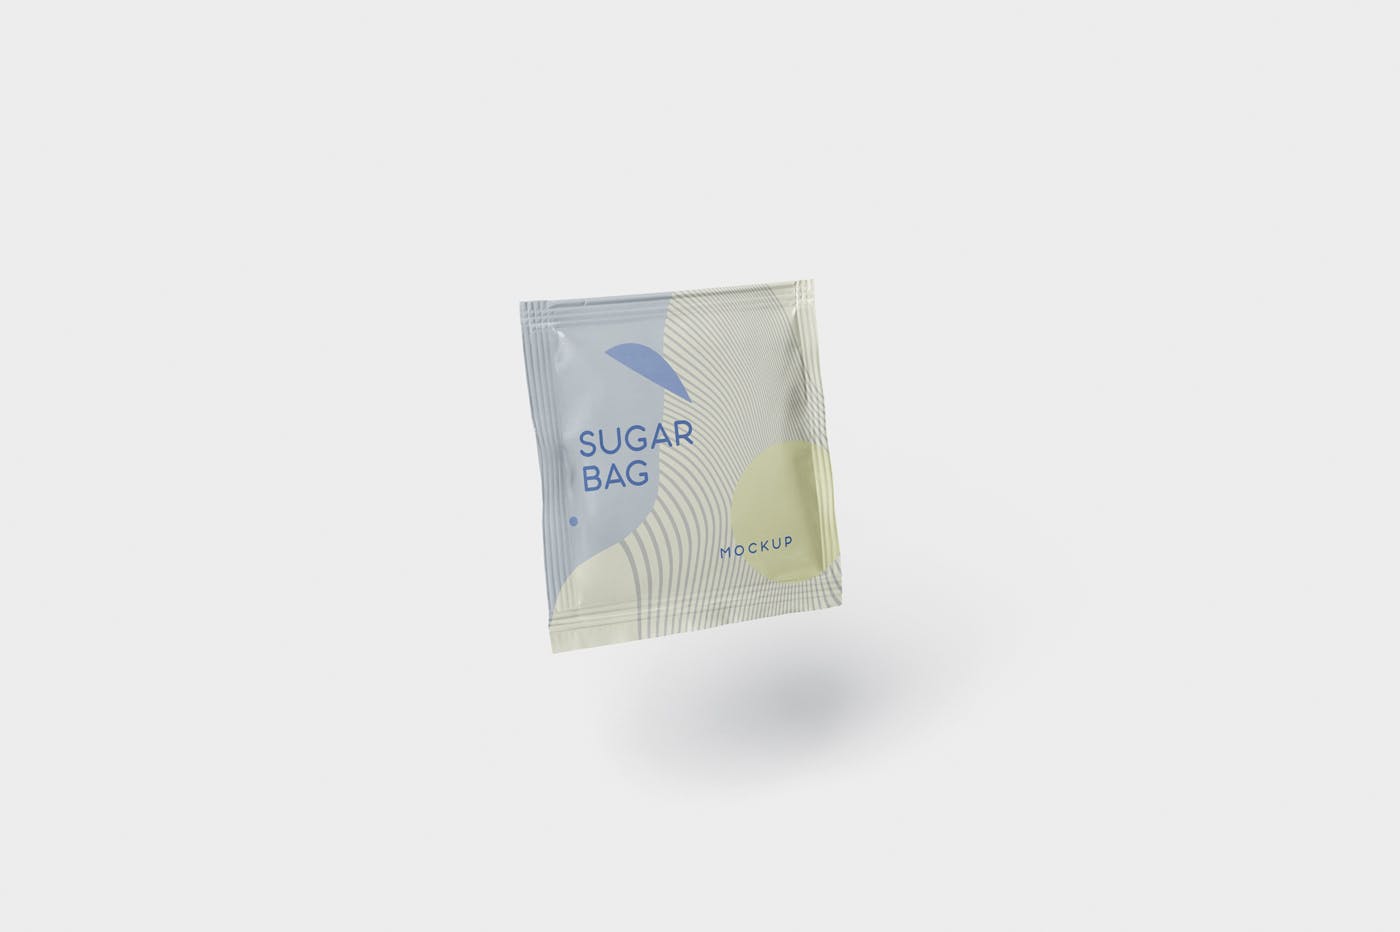 盐袋糖袋包装设计效果图第一素材精选 Salt OR Sugar Bag Mockup – Square Shaped插图(4)